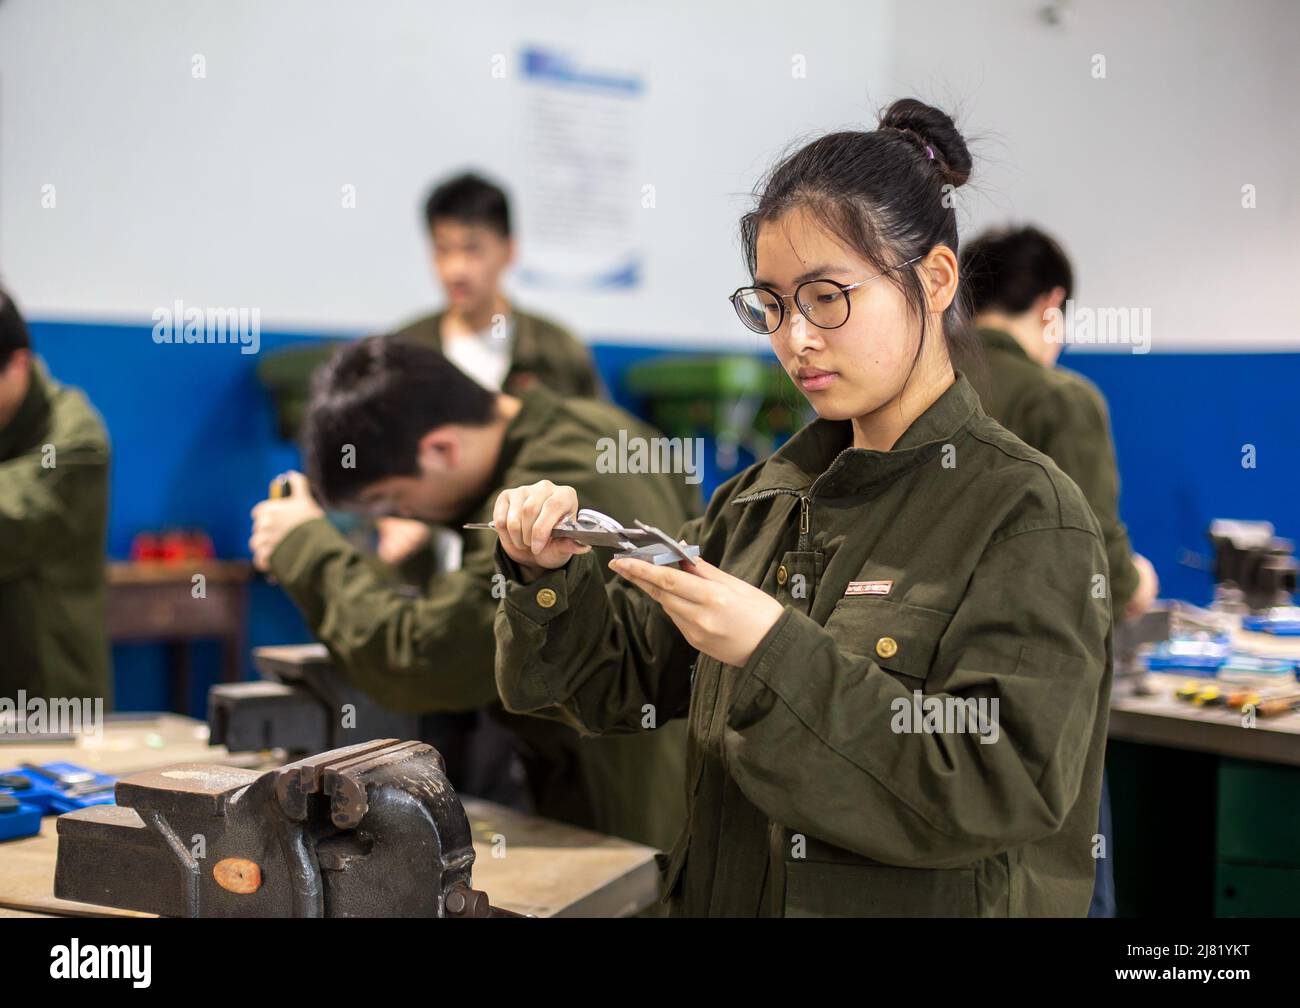 NANTONG, CINA - 12 MAGGIO 2022 - gli studenti prendono parte alla formazione operativa presso una scuola professionale a Nantong, nella provincia di Jiangsu della Cina orientale, ma Foto Stock